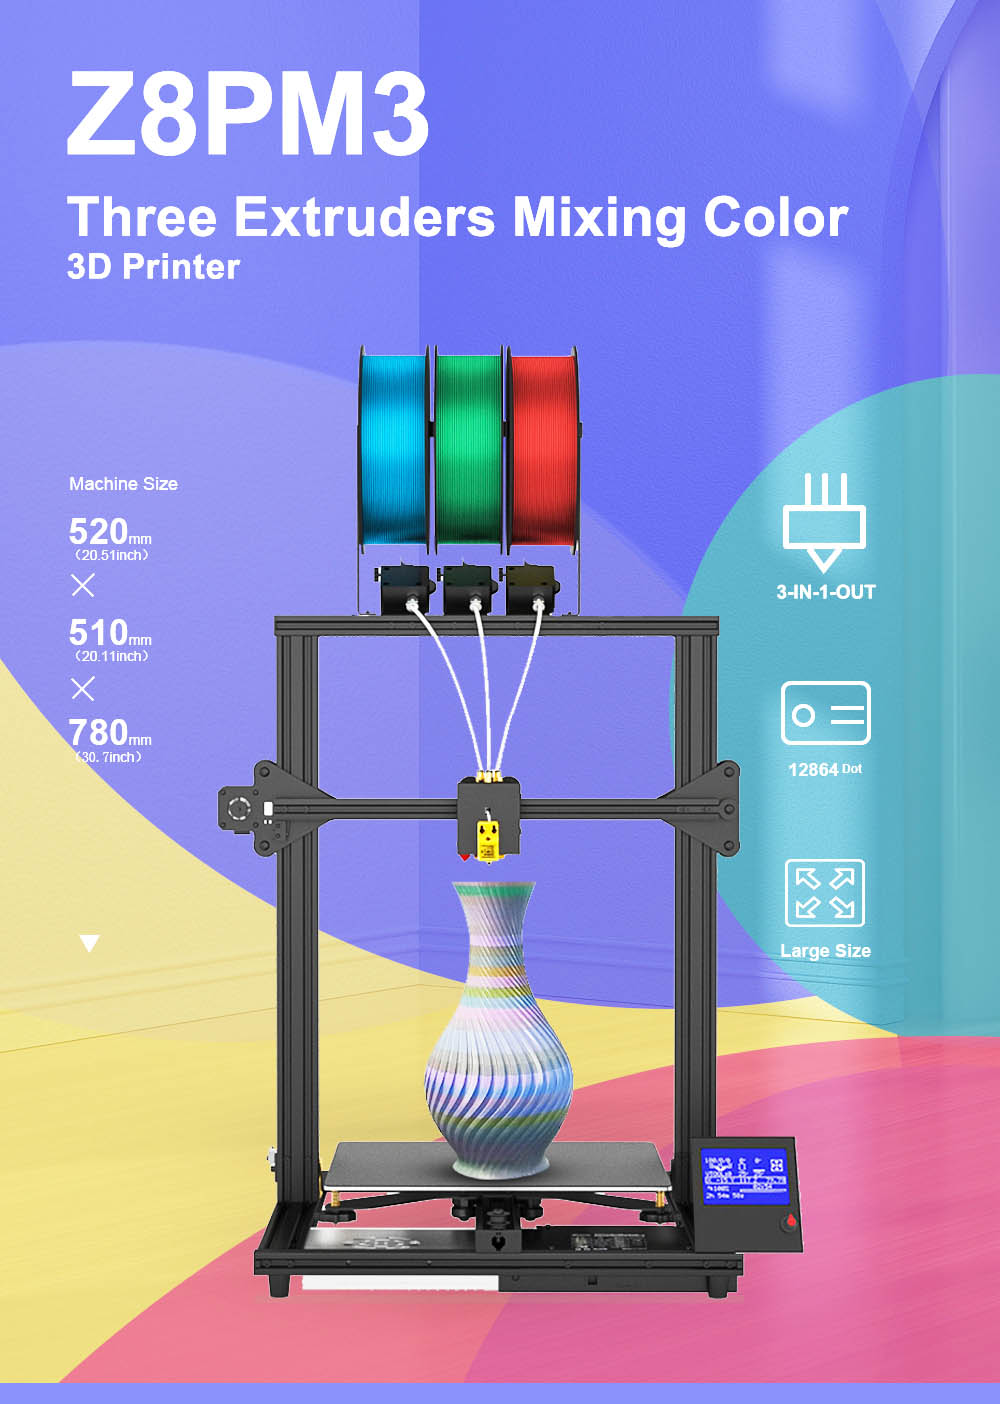 Extrusora Zonestar Z8PM3 3-IN-1-OUT Impressora 3D com mistura de cores Tela LCD de alta precisão e resolução Kit DIY - Preto